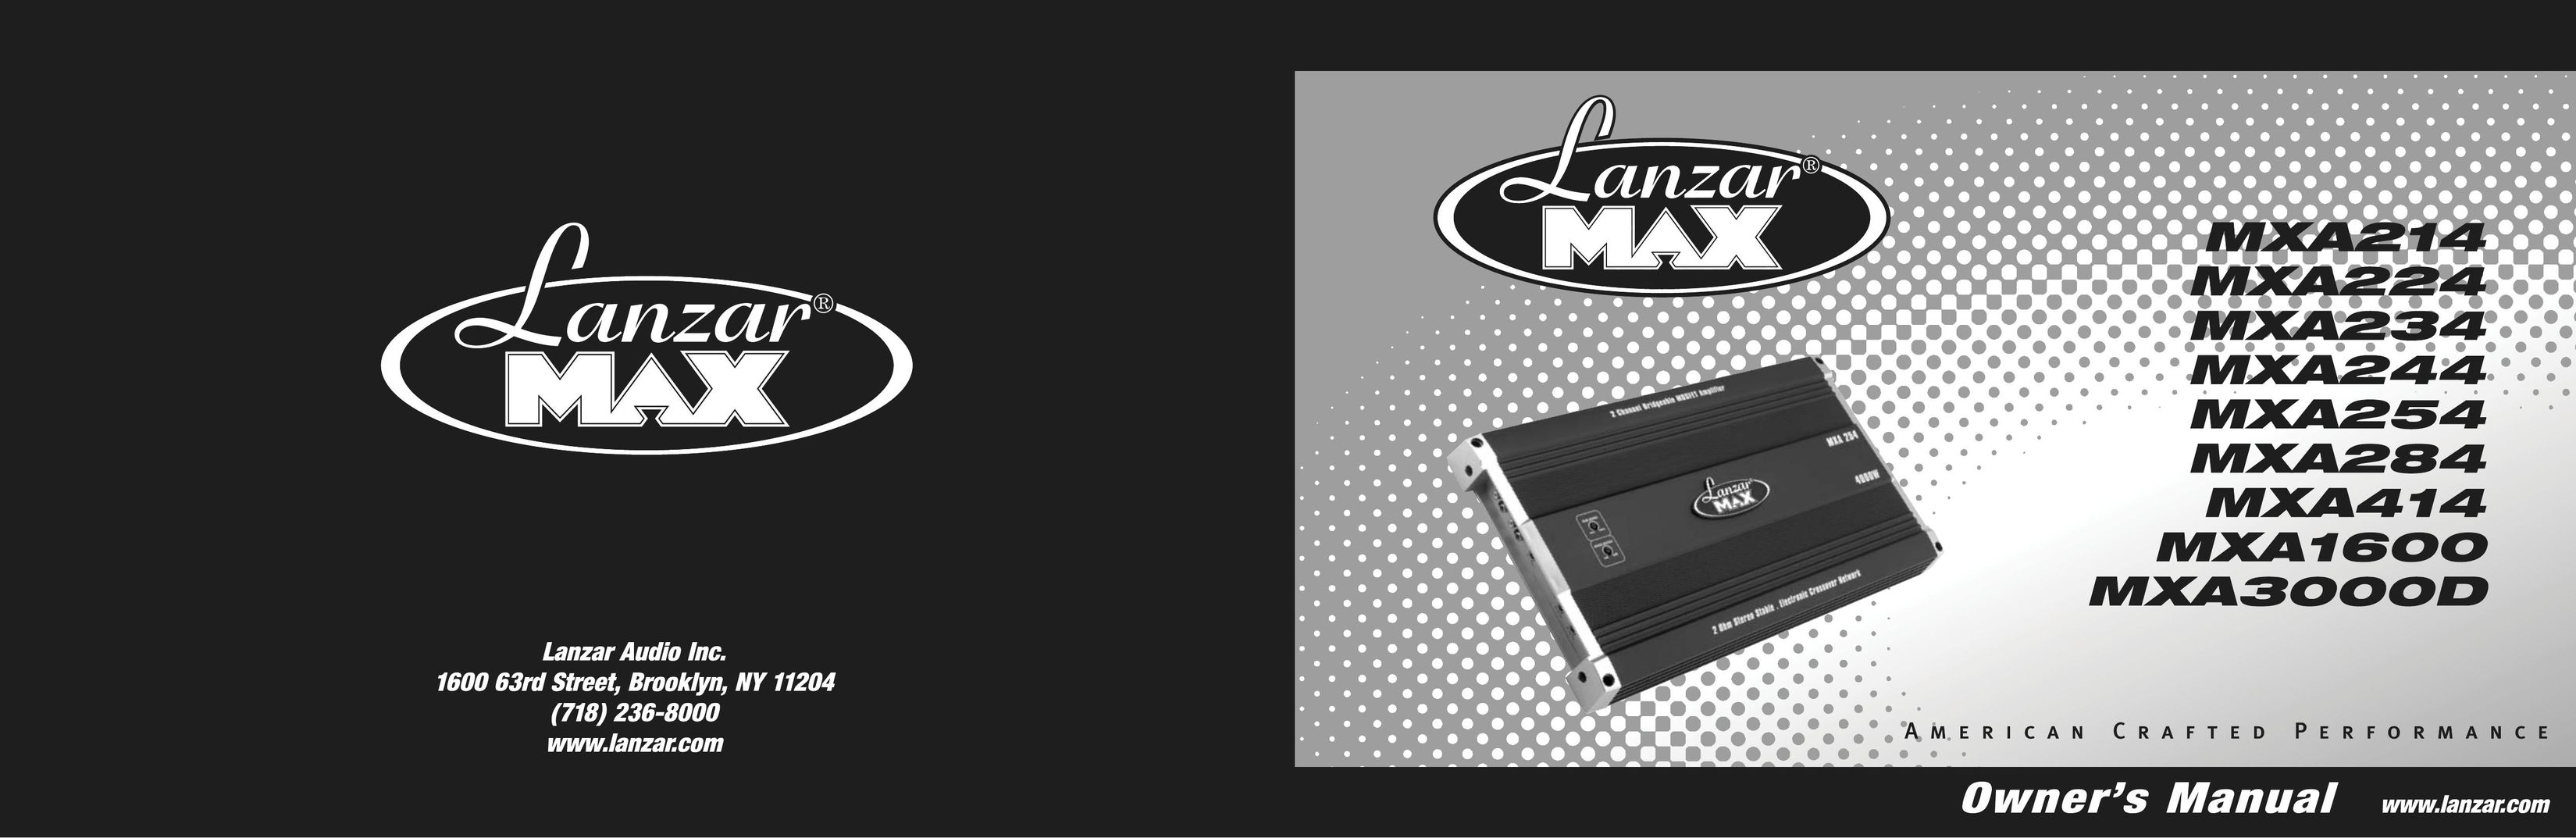 Lanzar Car Audio MXA254 Car Amplifier User Manual